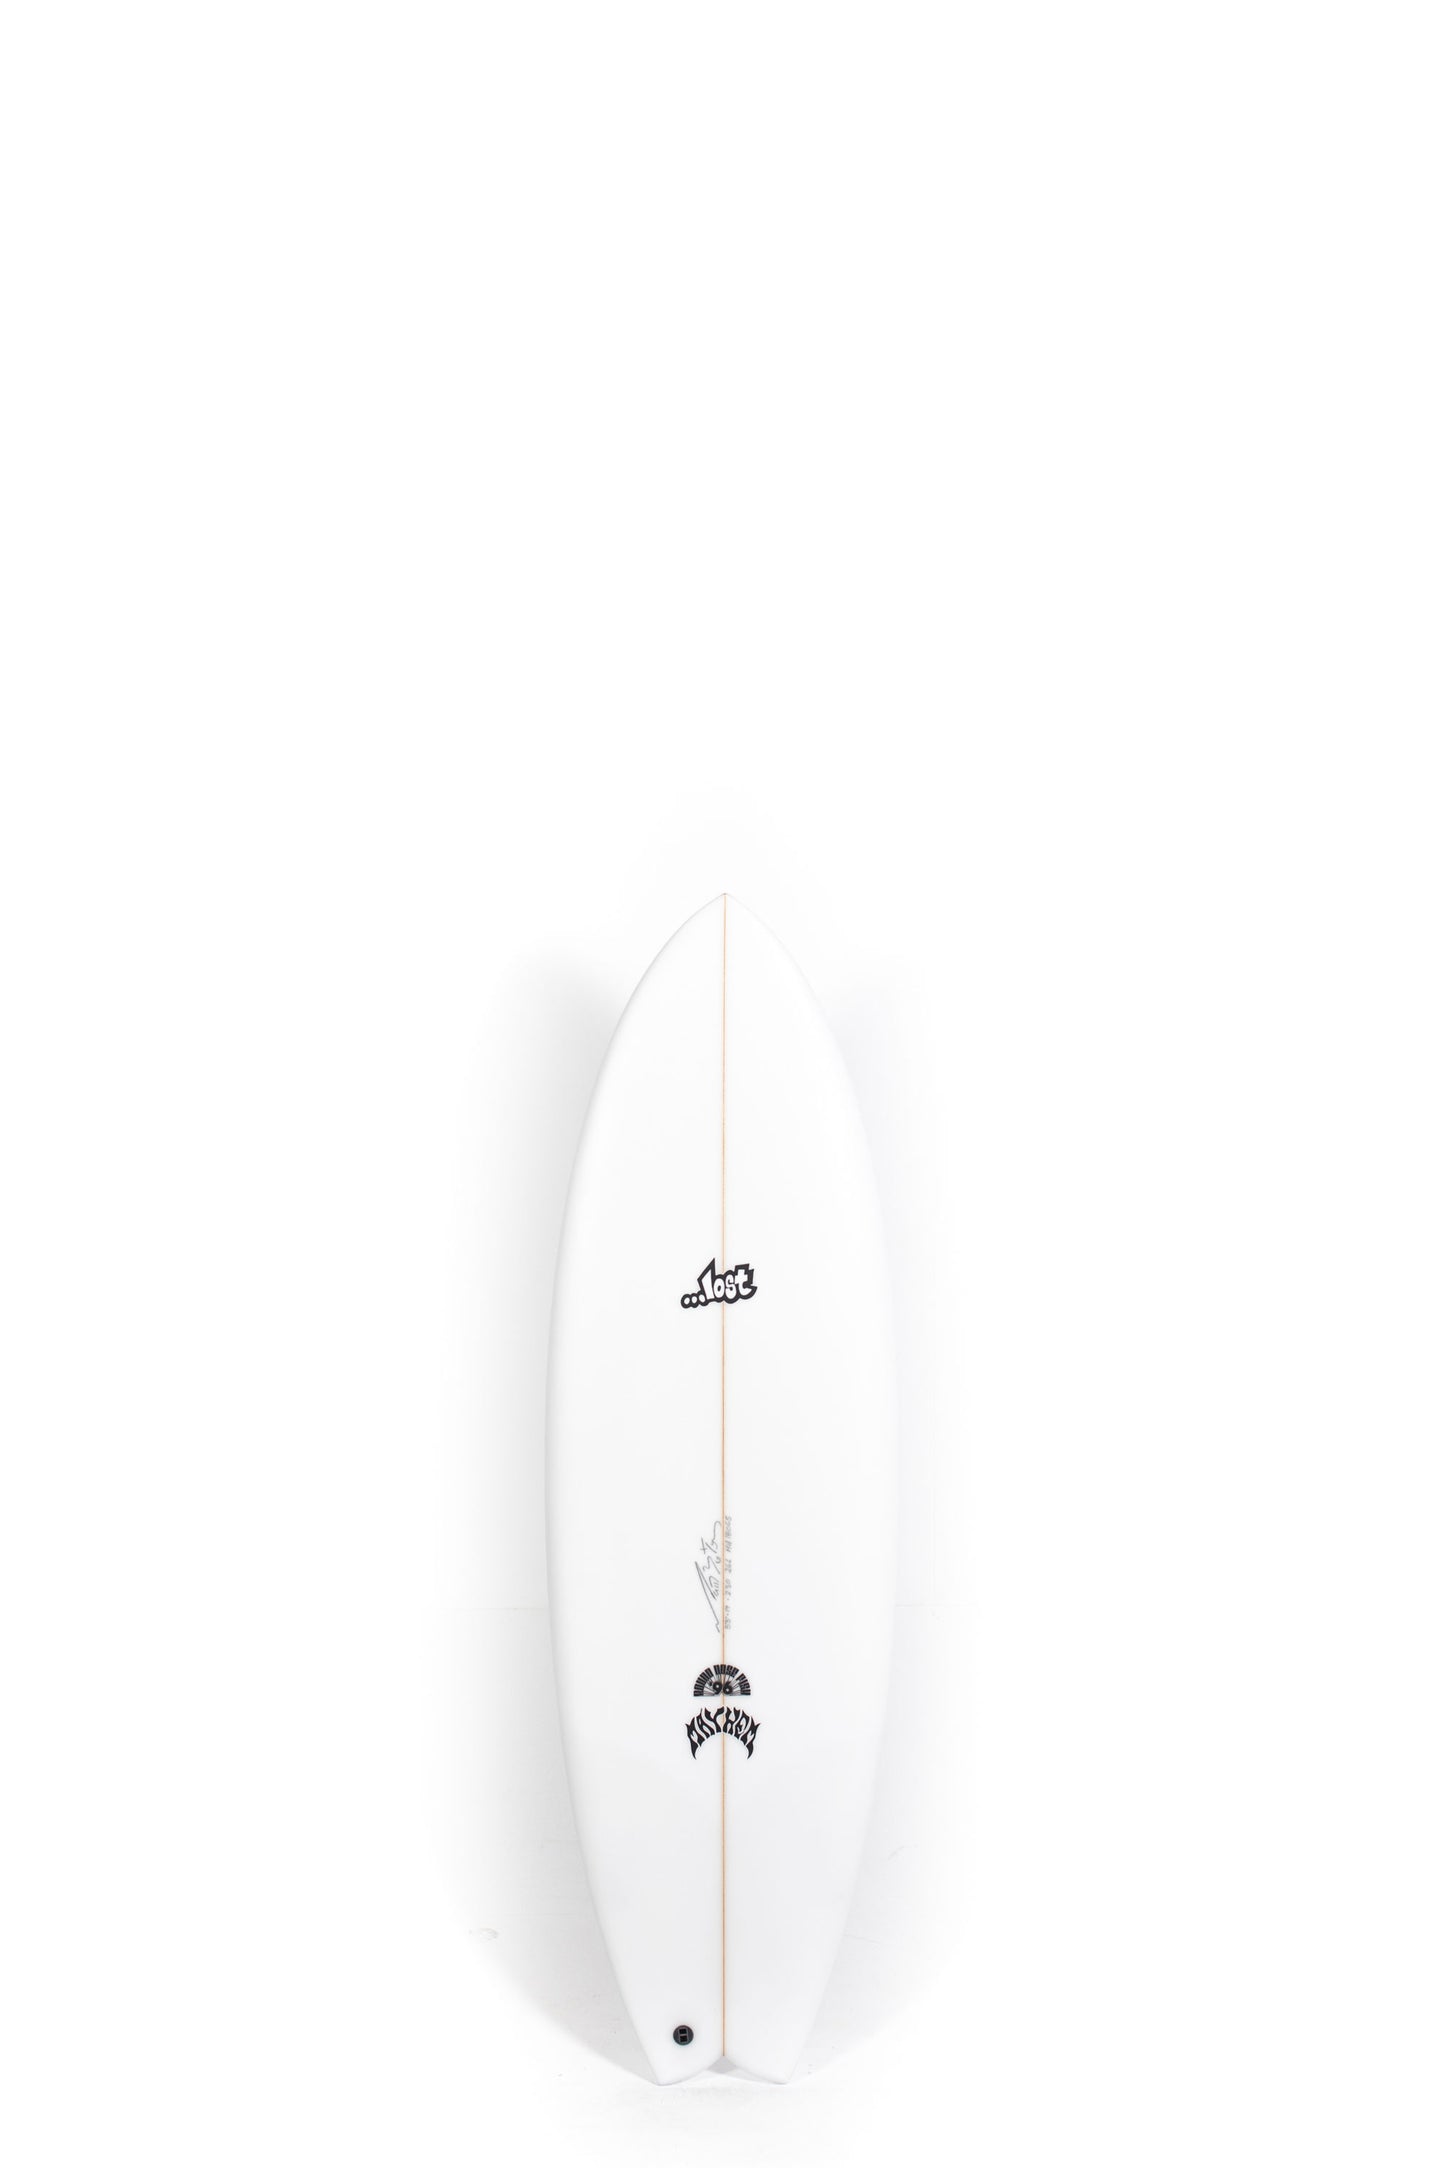 Pukas Surf Shop - Lost Surfboard - RNF '96 by Matt Biolos - 5'3"x 19" x 2.3 x 26L - MH18063